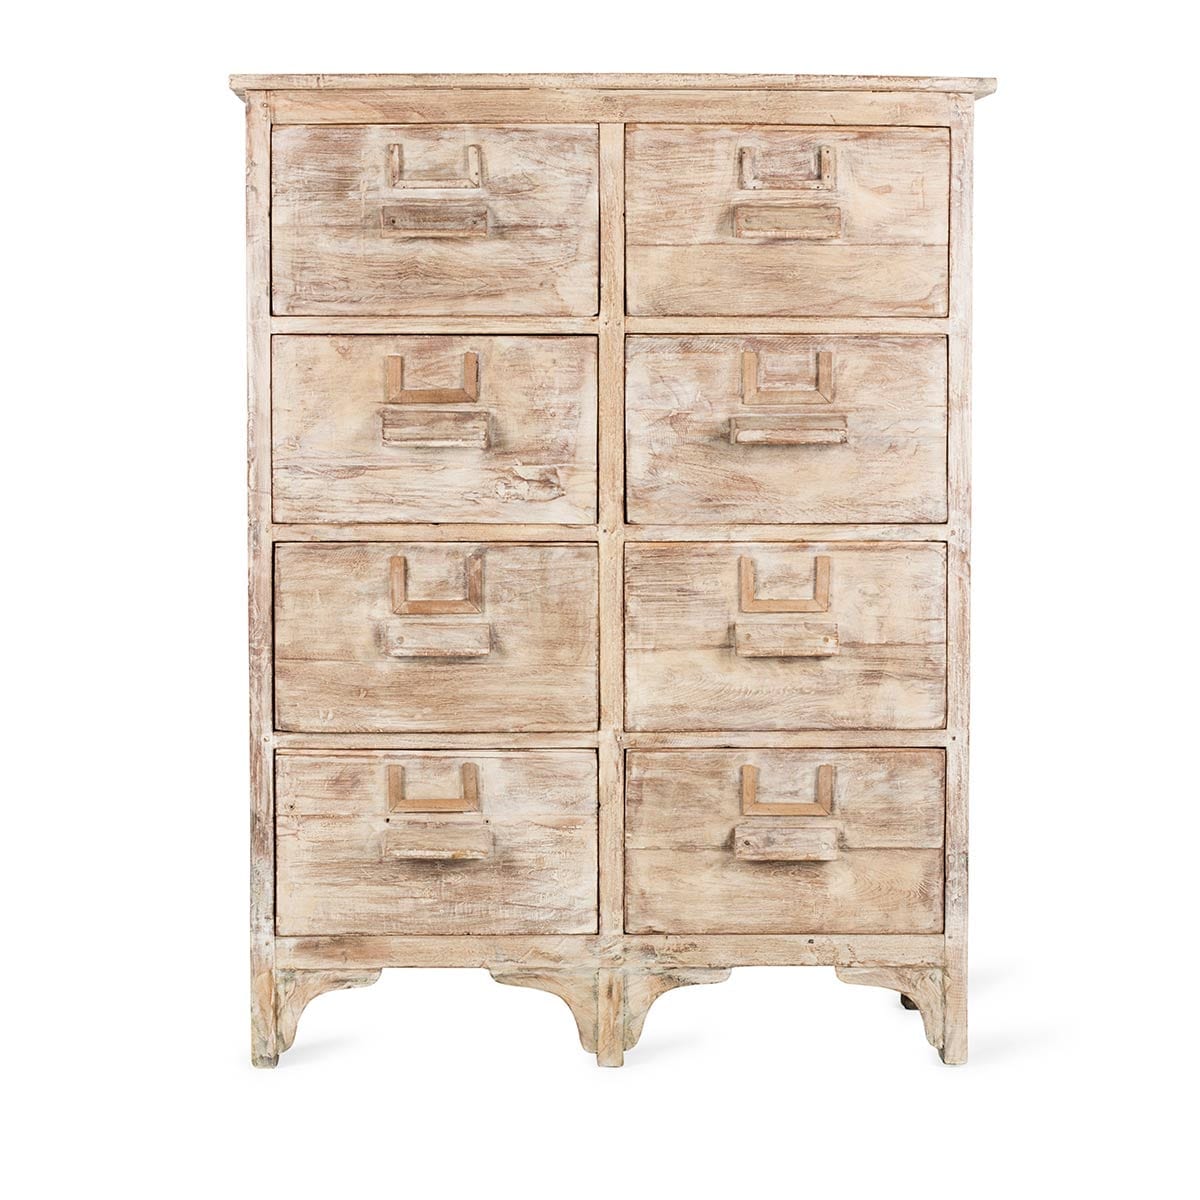 Confidencial adherirse Grillo Mueble de madera vintage con cajones para almacenamiento.